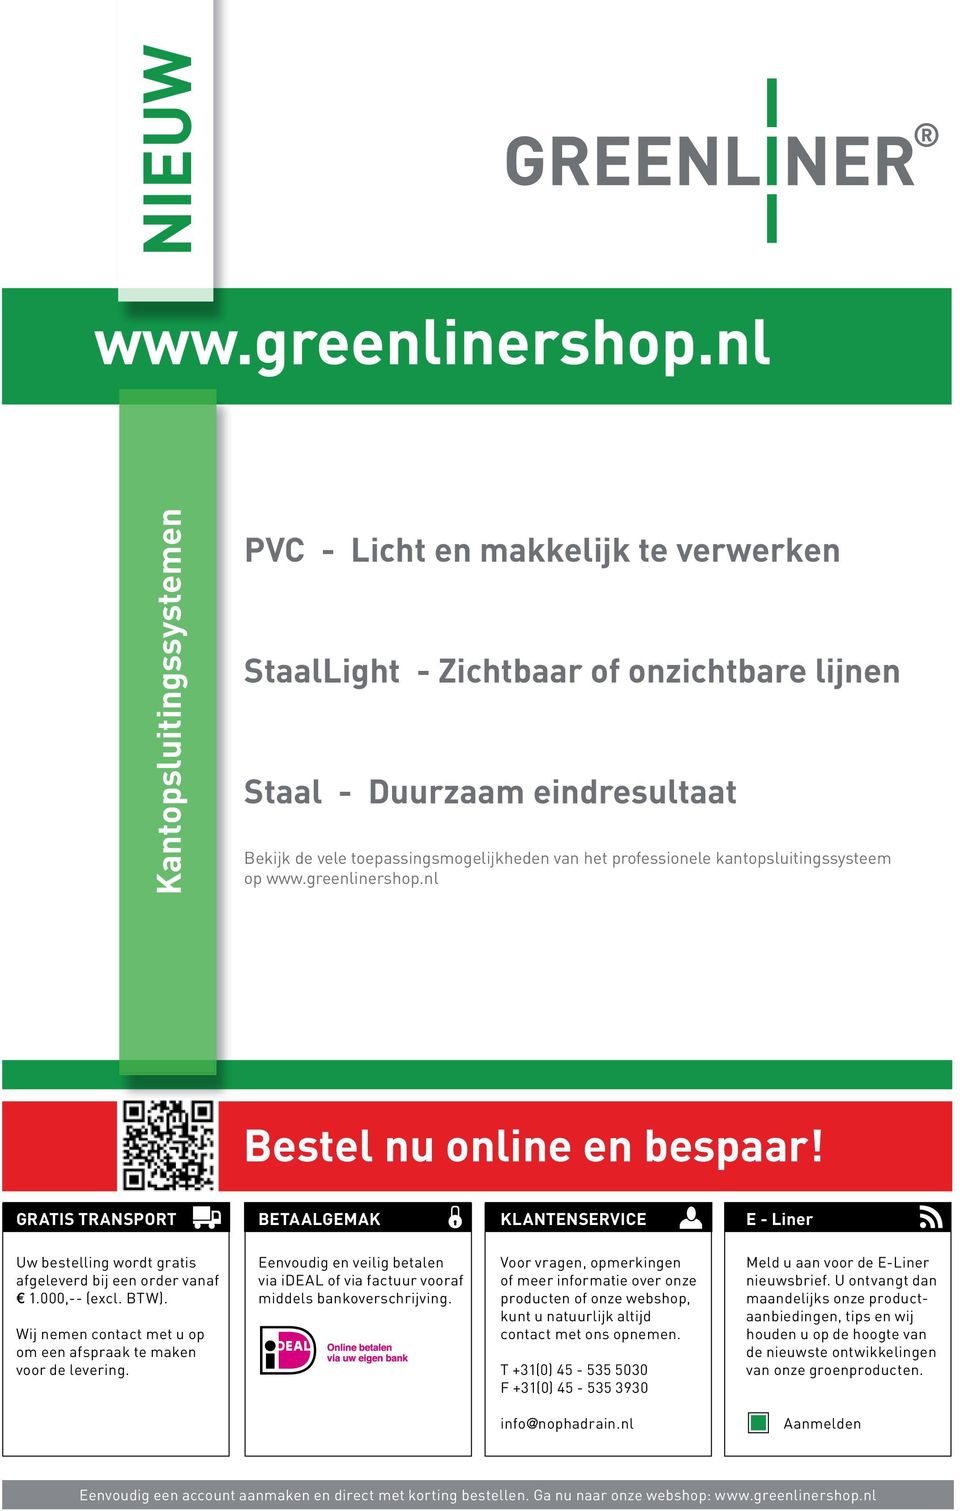 professionele kantopsluitingssysteem op www.greenlinershop.nl Bestel nu online en bespaar!